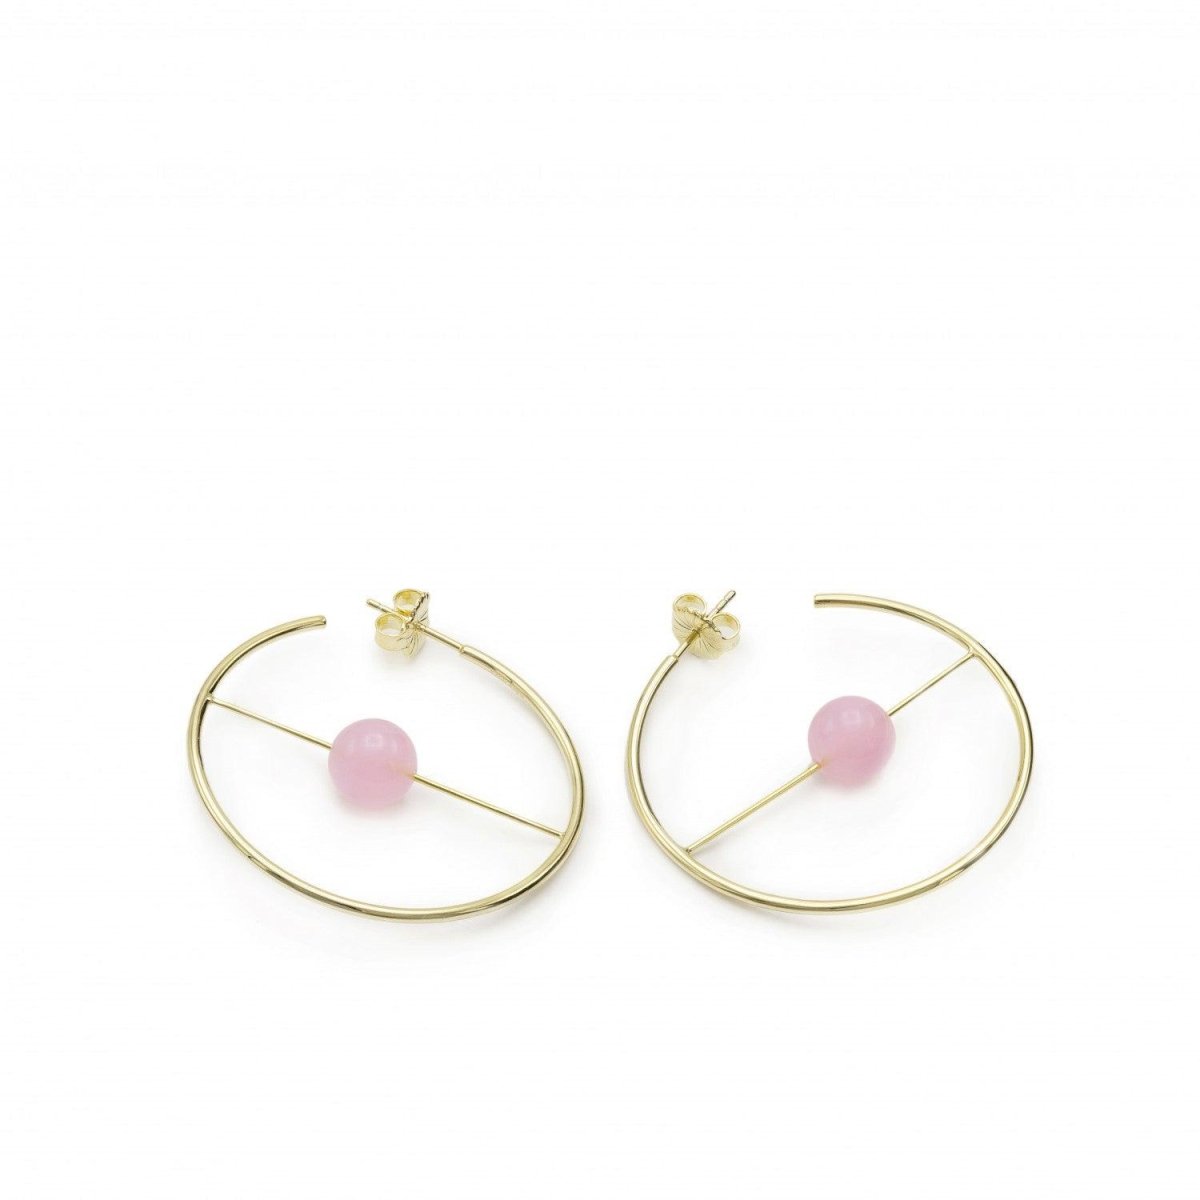 Pendiente · Aros dorados diseño circular y barra con cuarzo rosa central